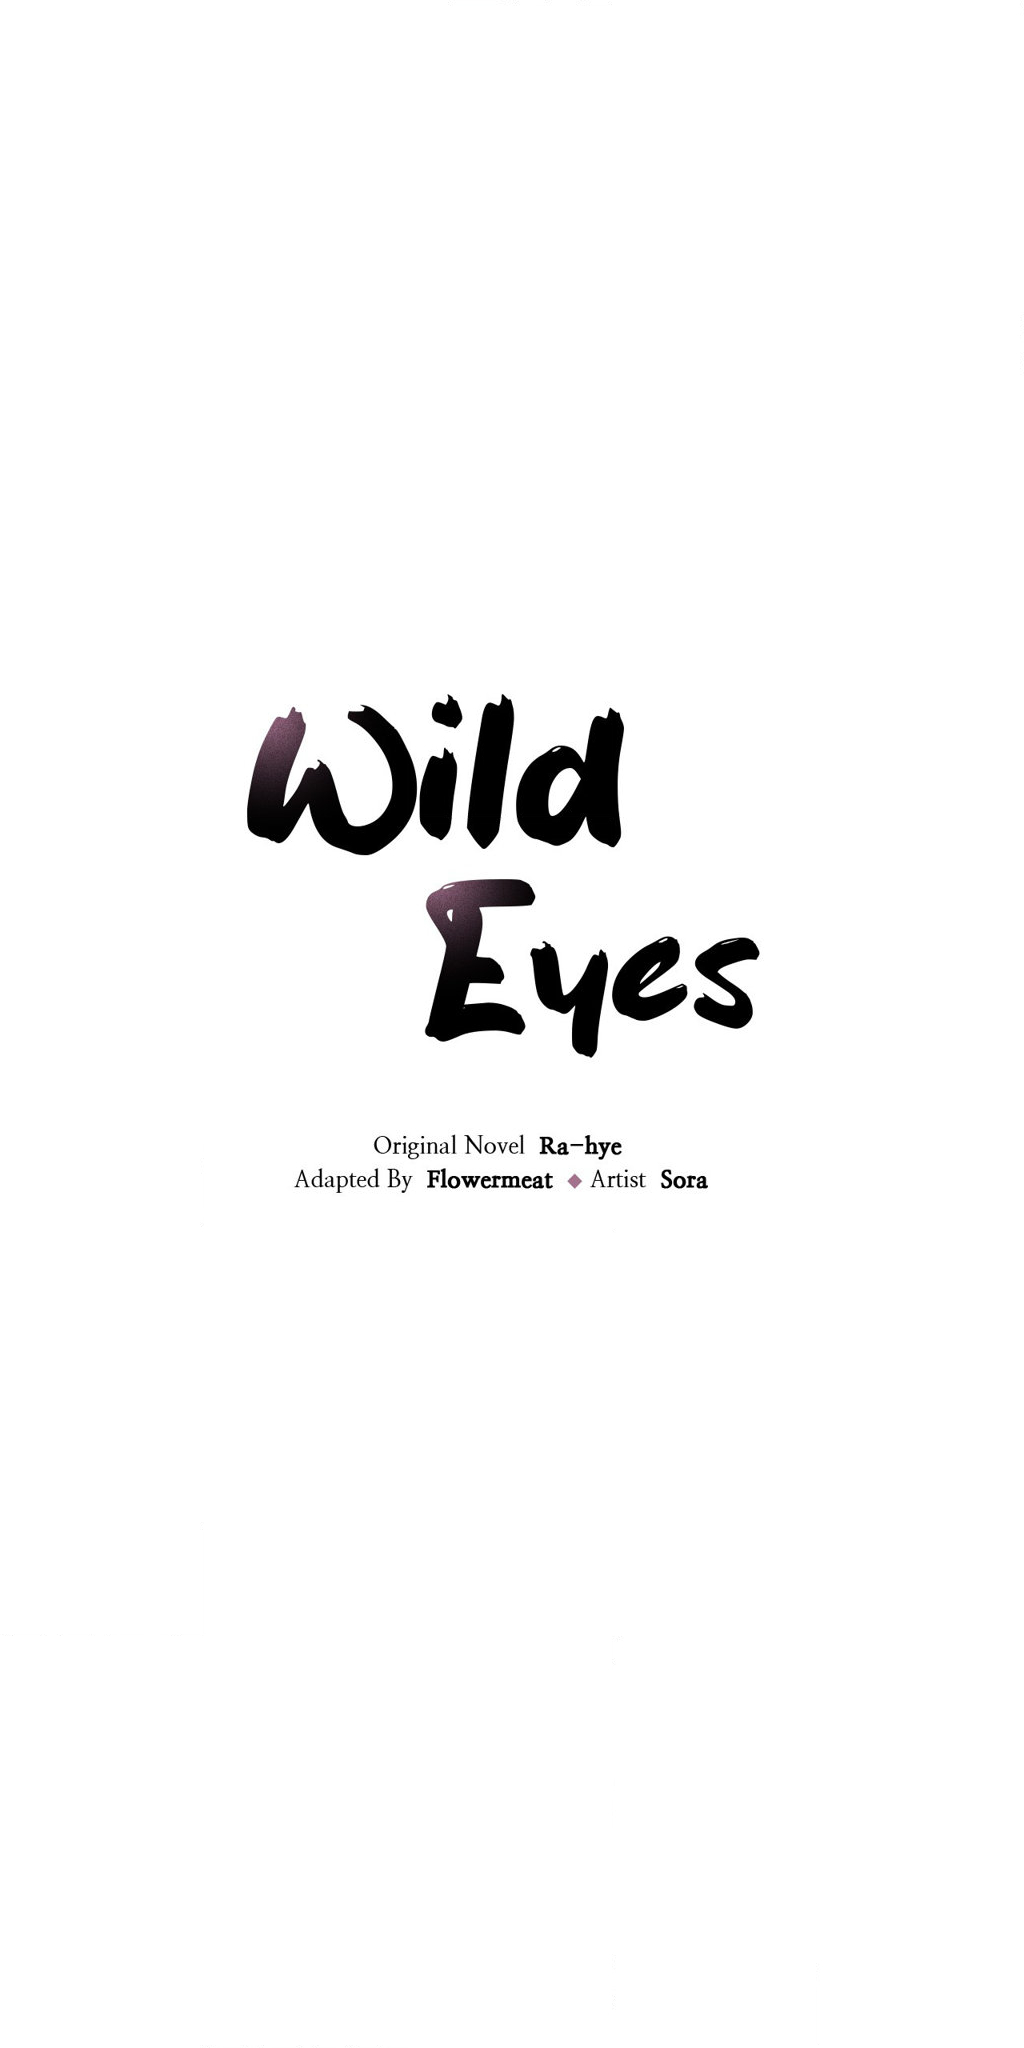 Wild Eyes NEW image